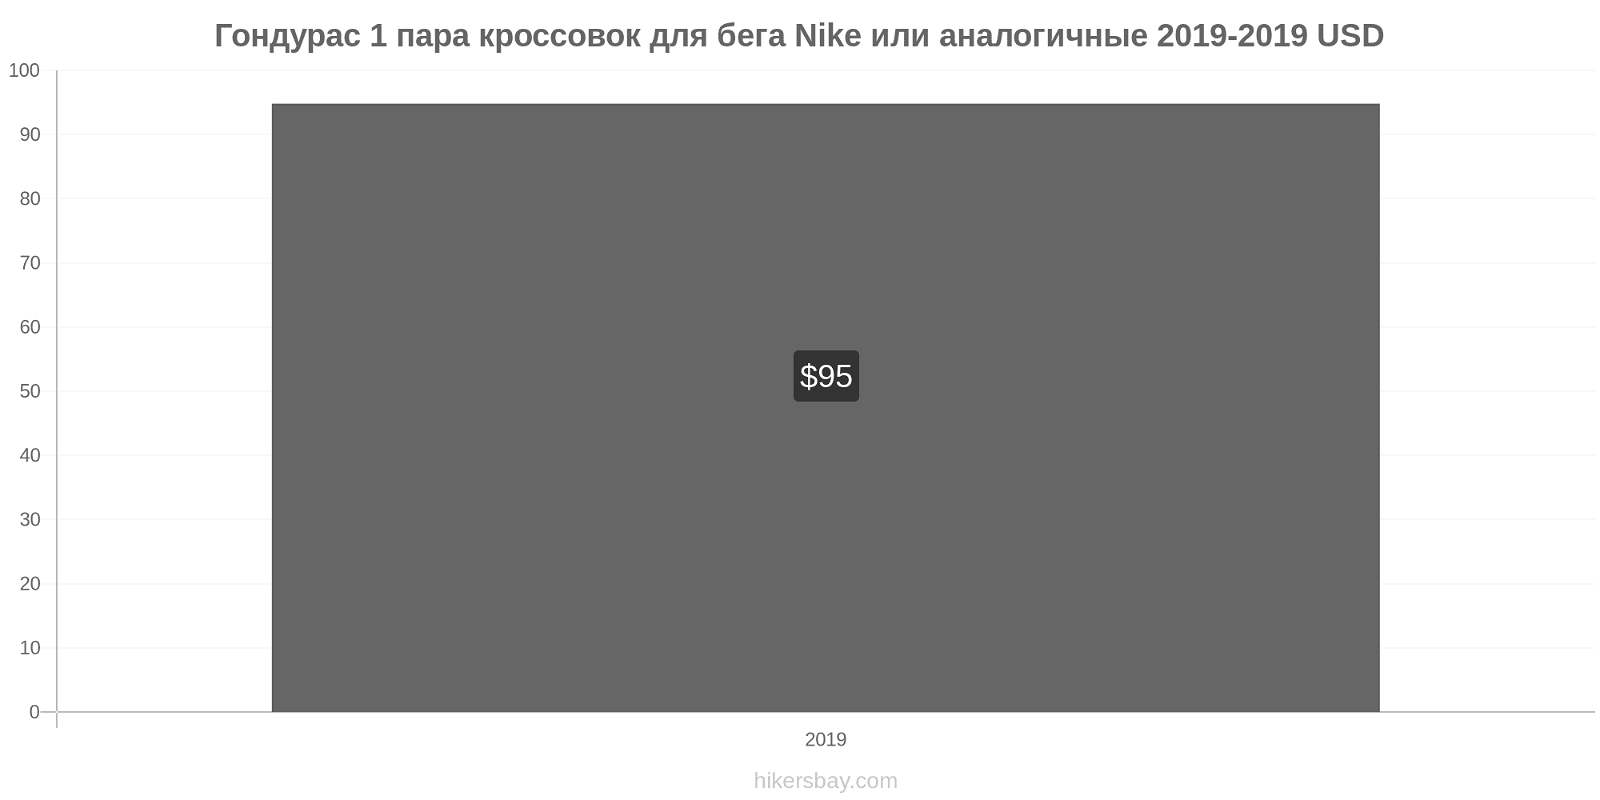 Гондурас изменения цен 1 пара кроссовок для бега Nike или аналогичные hikersbay.com